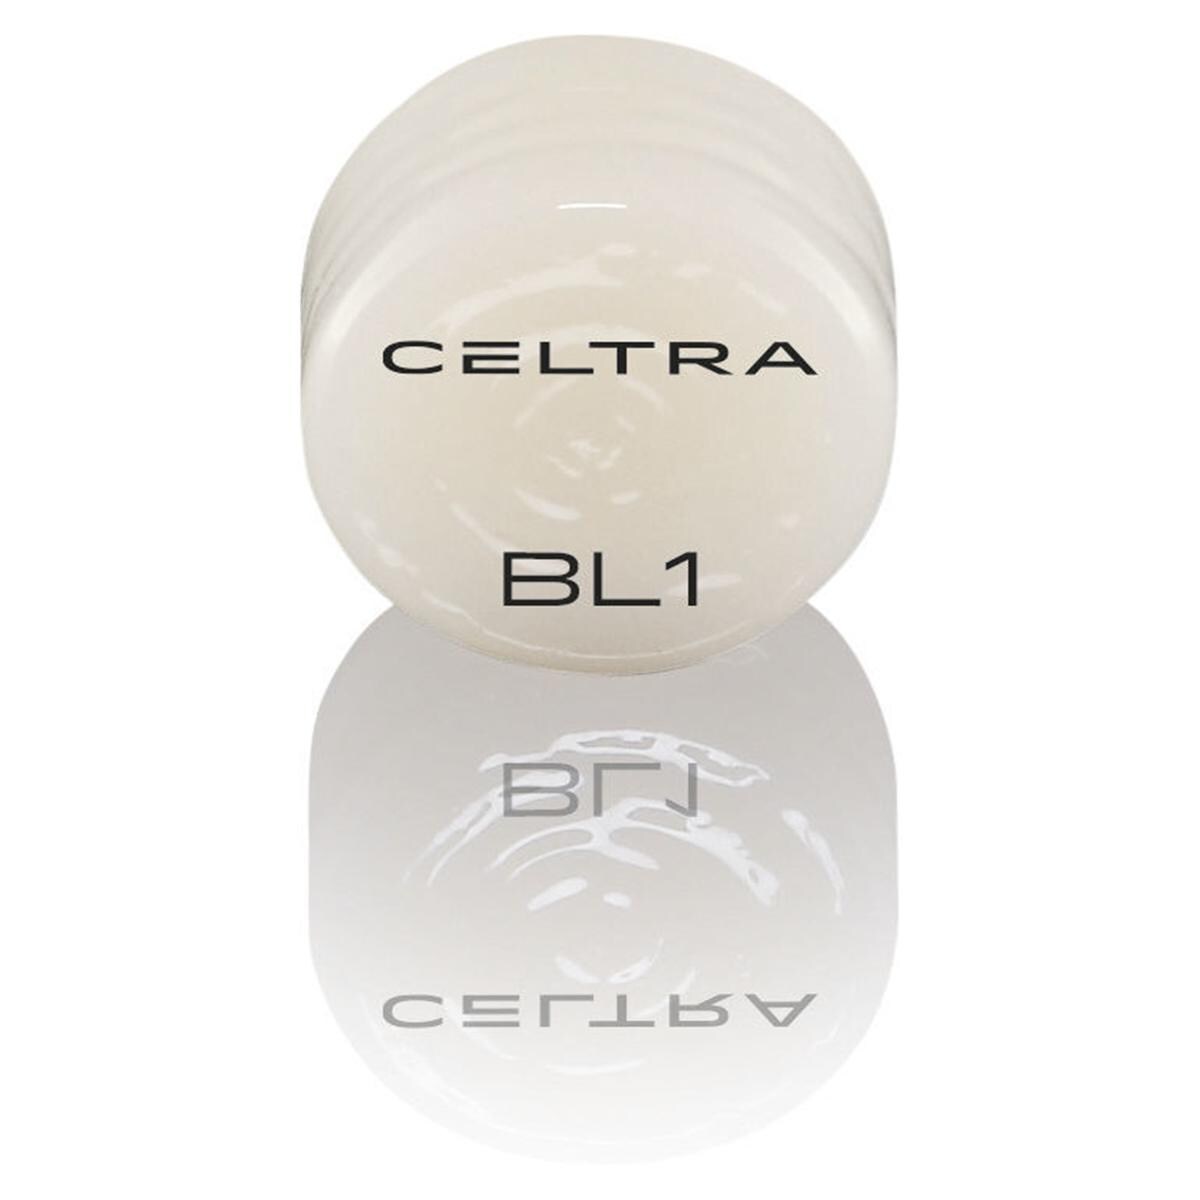 CELTRA® Press LT/MT Bleach - BL1, Packung 5 x 3 g